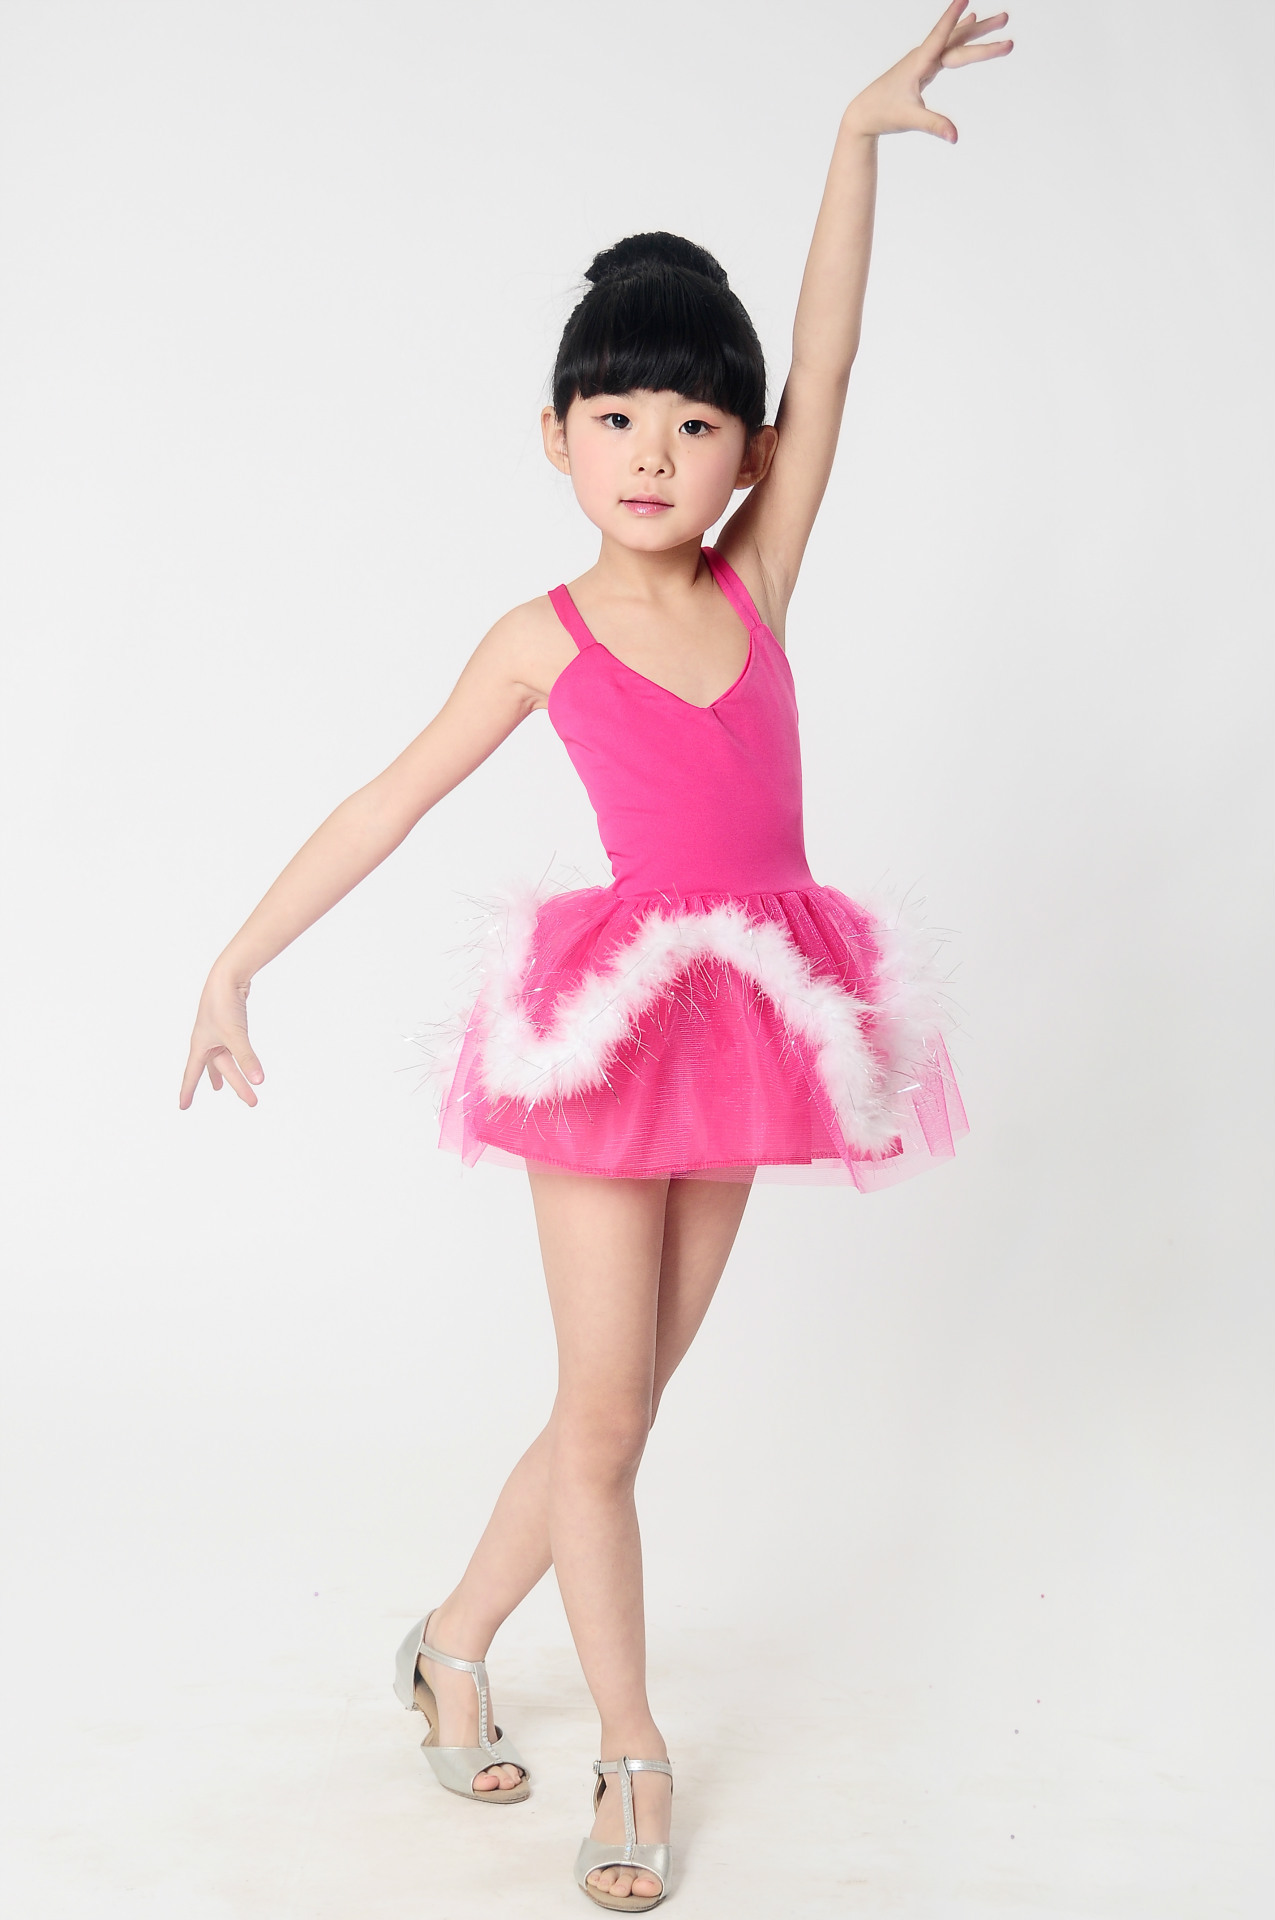 户外运动儿童拉丁舞蹈服装 女童演出服少儿拉丁舞裙练功服幼儿表演服